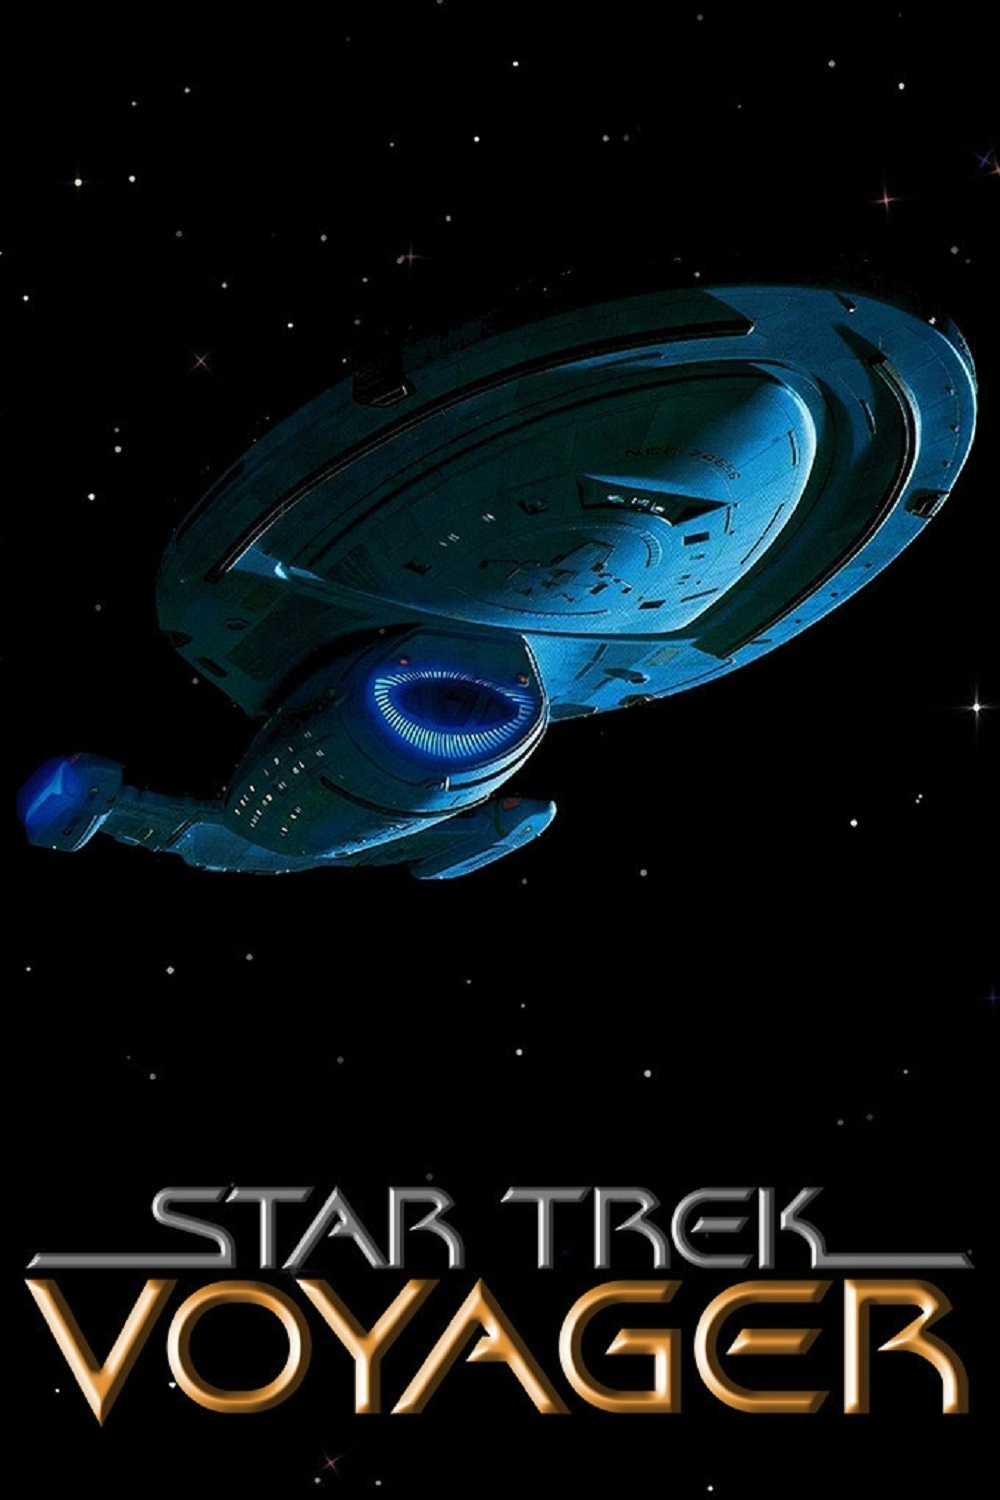 star trek voyager season 4 episode 9